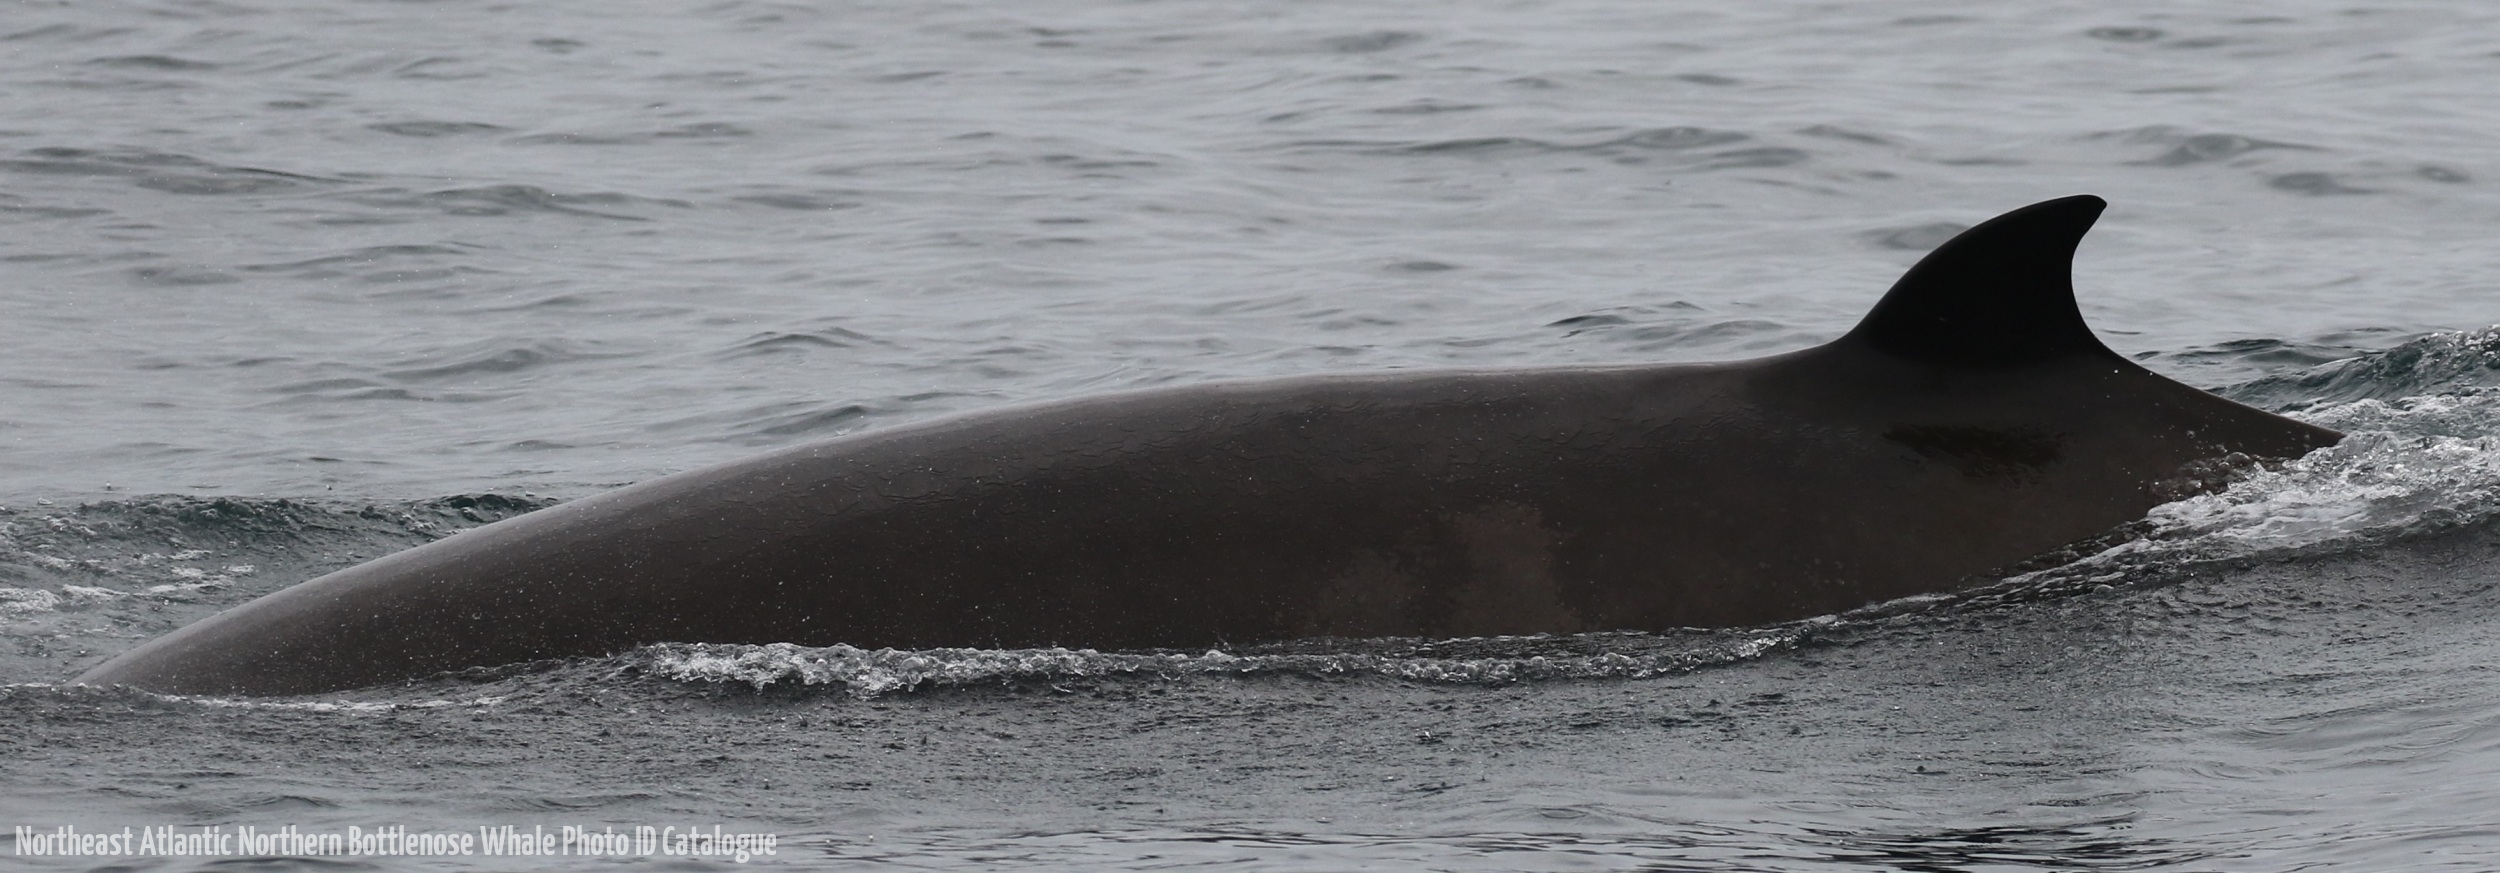 Whale ID: 0205,  Date taken: 21-06-2016,  Photographer: Eilidh Siegal